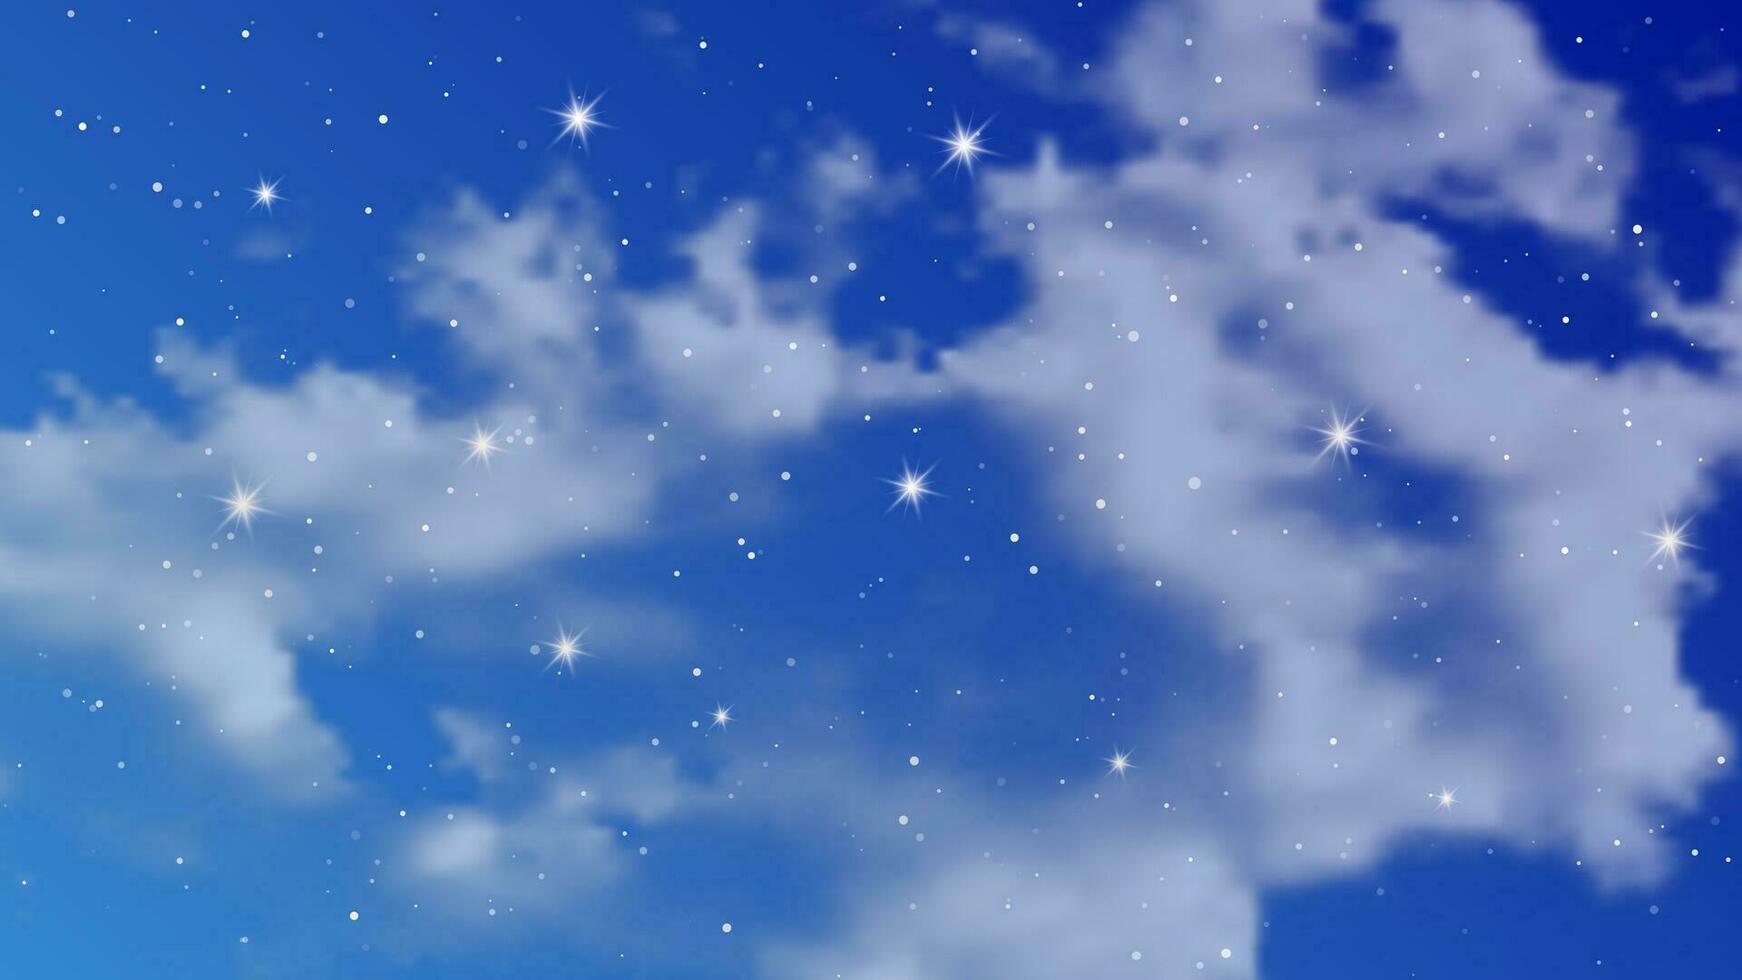 ciel nocturne avec des nuages et de nombreuses étoiles. fond de nature abstraite avec poussière d'étoiles dans l'univers profond. illustration vectorielle. vecteur